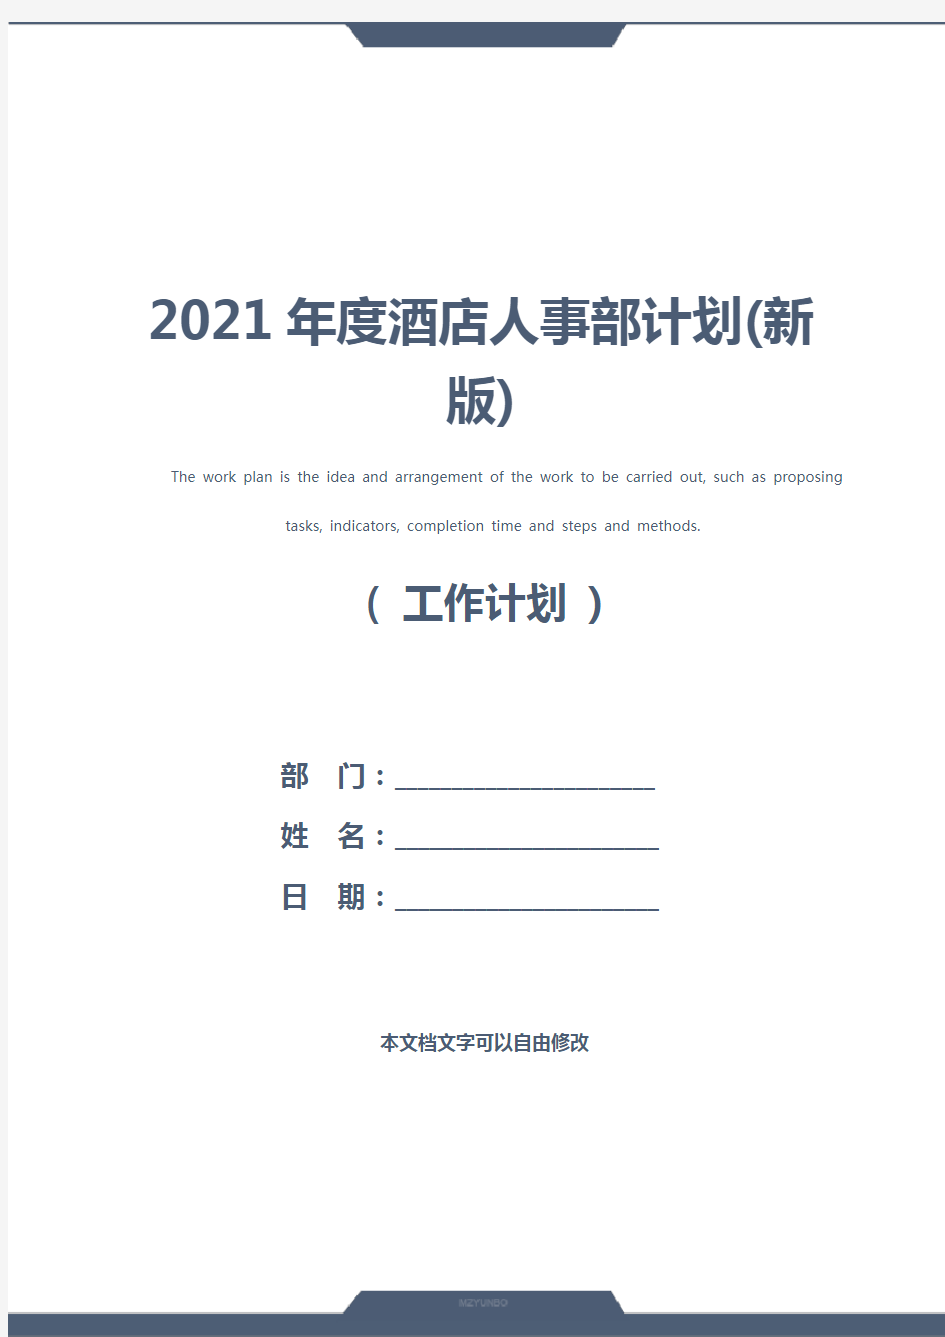 2021年度酒店人事部计划(新版)